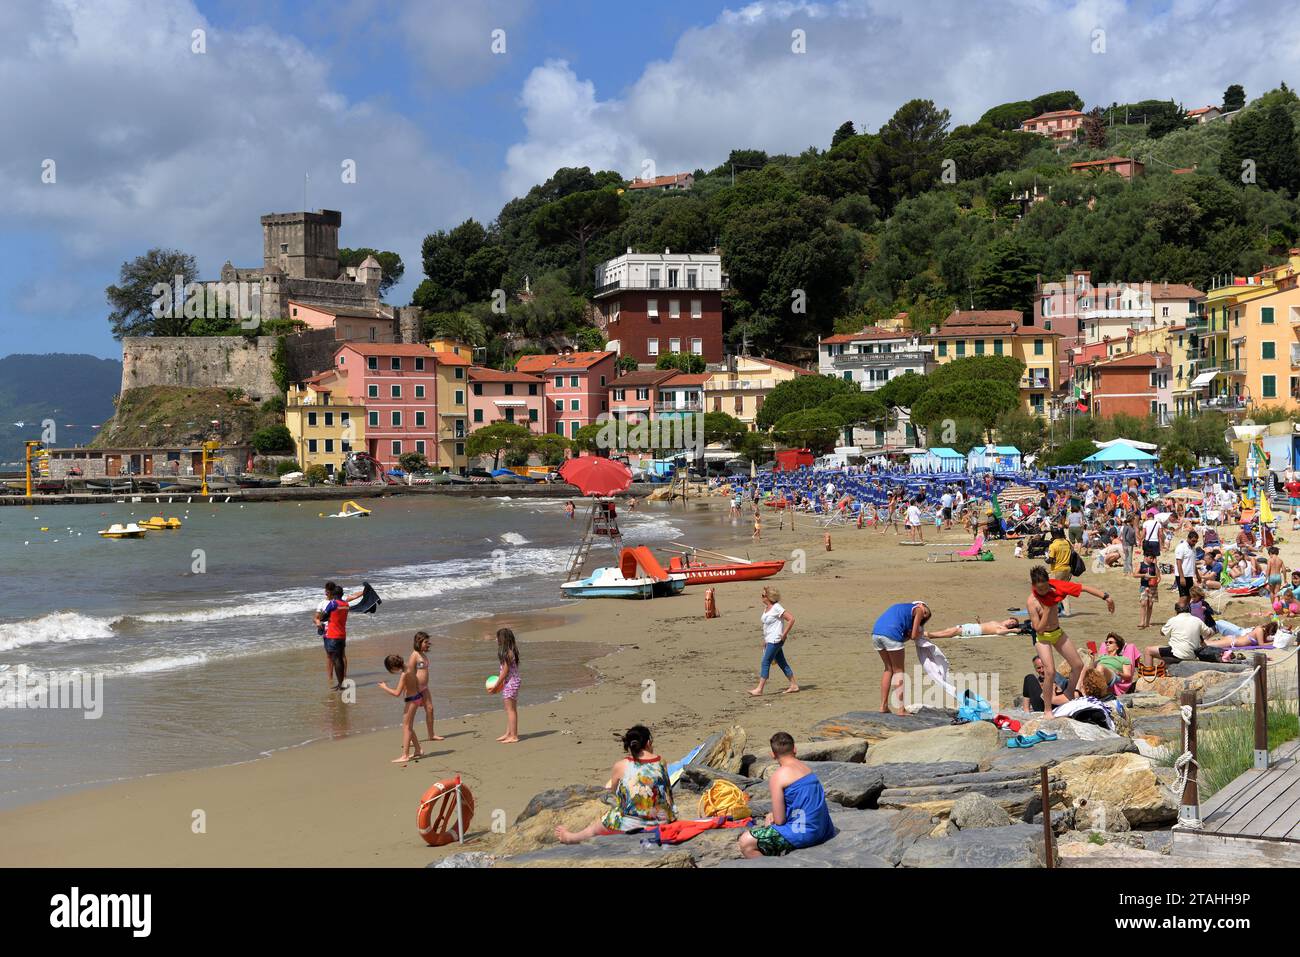 SAN TERENZO, LERICI, ITALIE - 16 JUIN 2016 : plage de San Terenzo (St. Terenzo) bondée de baigneurs dans une journée de juin. Banque D'Images